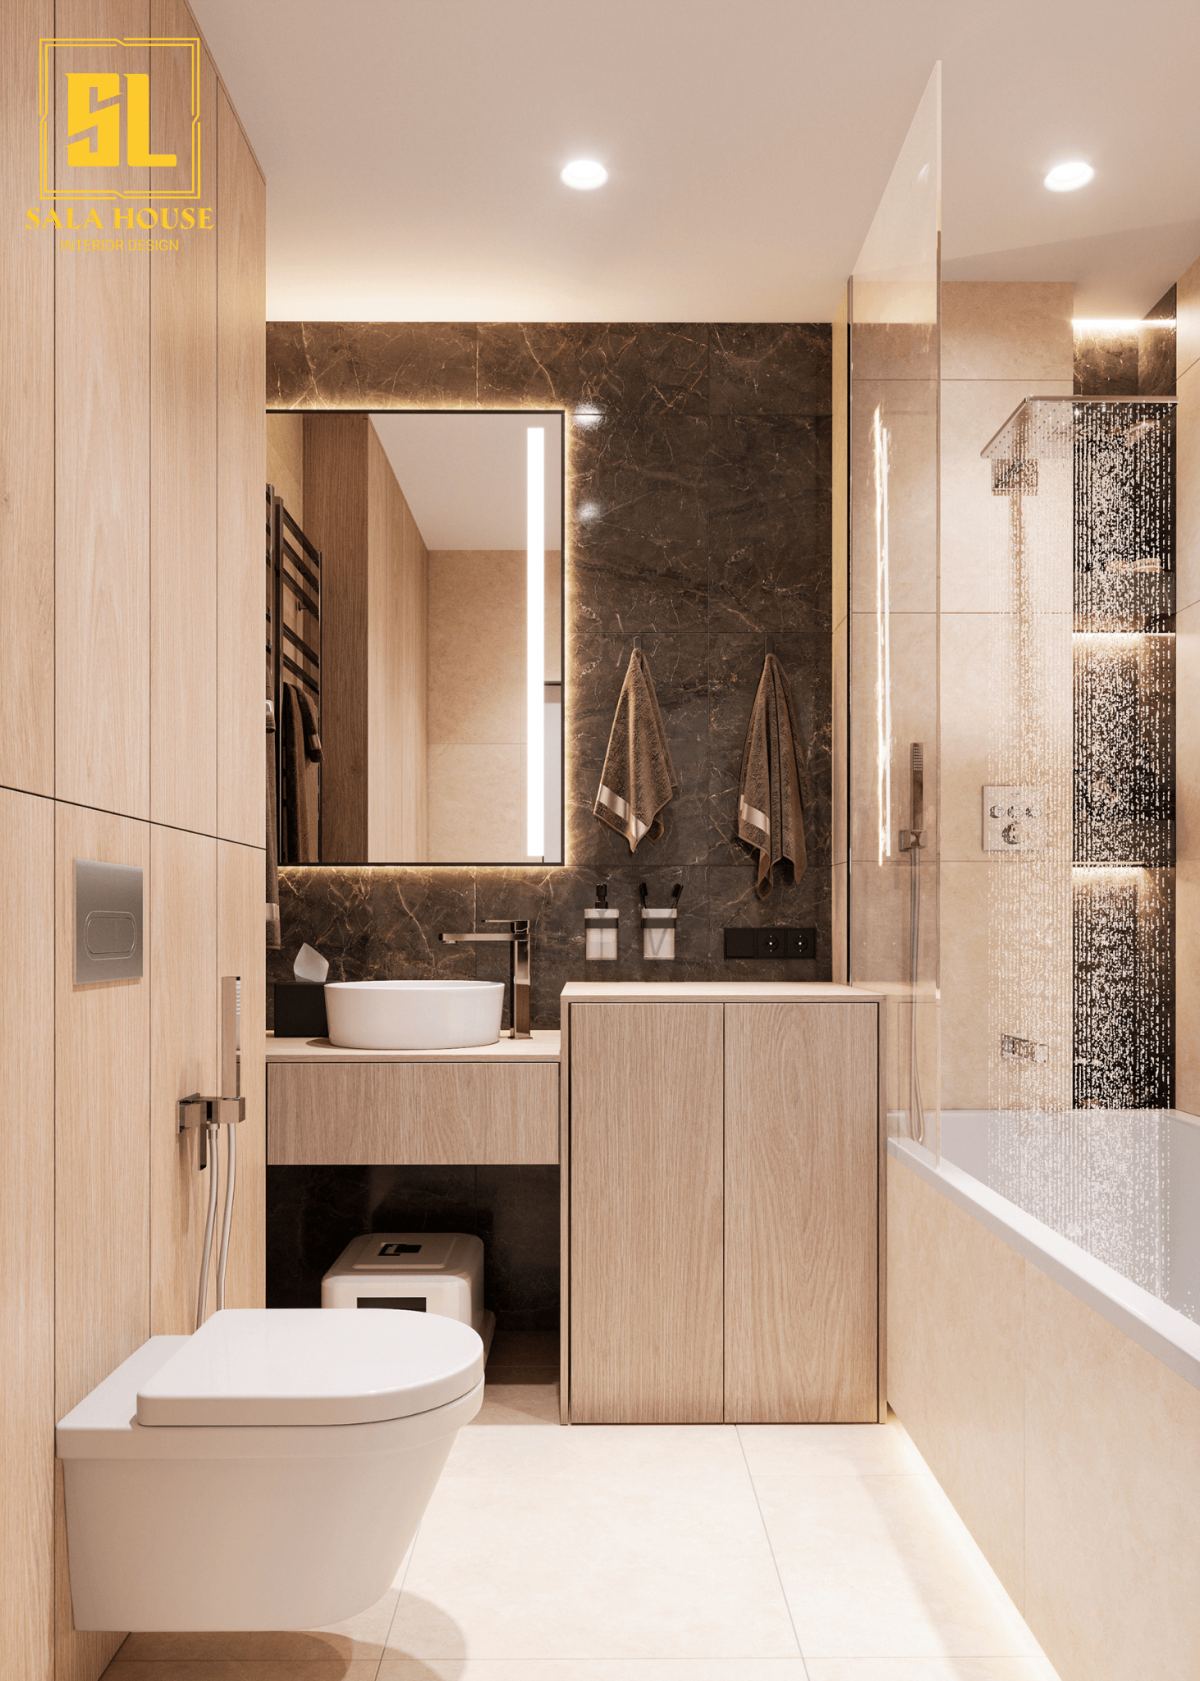 Mẫu phòng tắm đẹp: Phòng tắm được coi là một nơi tắm điểm cho căn nhà của bạn. Với những mẫu phòng tắm đẹp được thiết kế với sự cân bằng giữa tiện nghi và thẩm mỹ, bạn sẽ có được không gian nghỉ ngơi và thư giãn tốt nhất sau những giờ làm việc mệt mỏi.